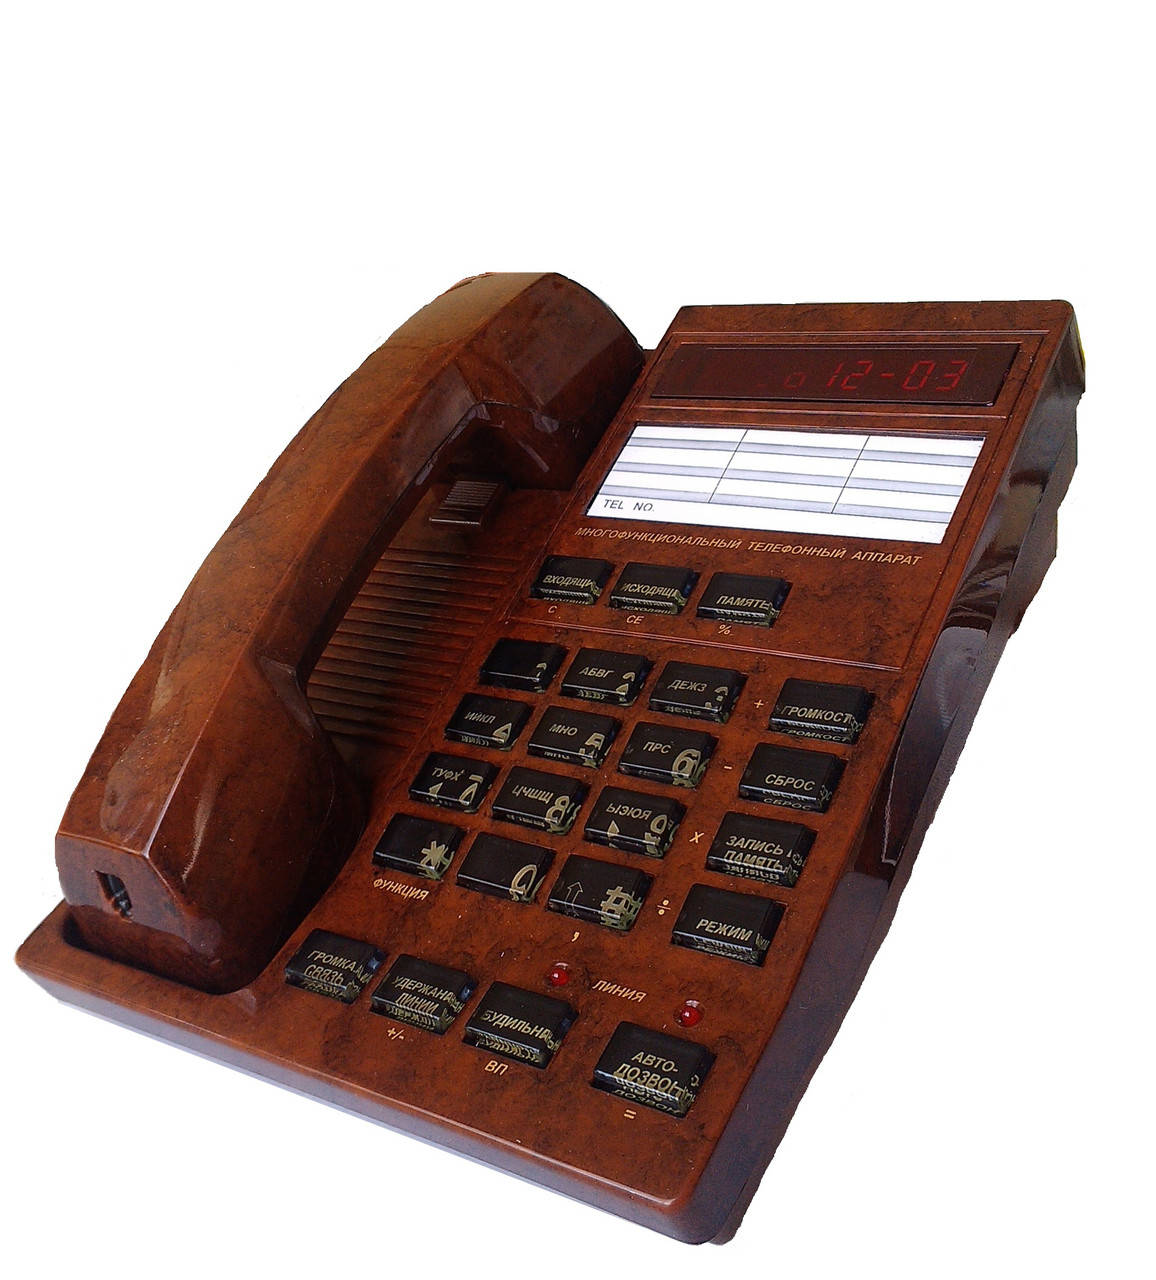 

Многофункциональный телефон с АОН МЭЛТ-3000